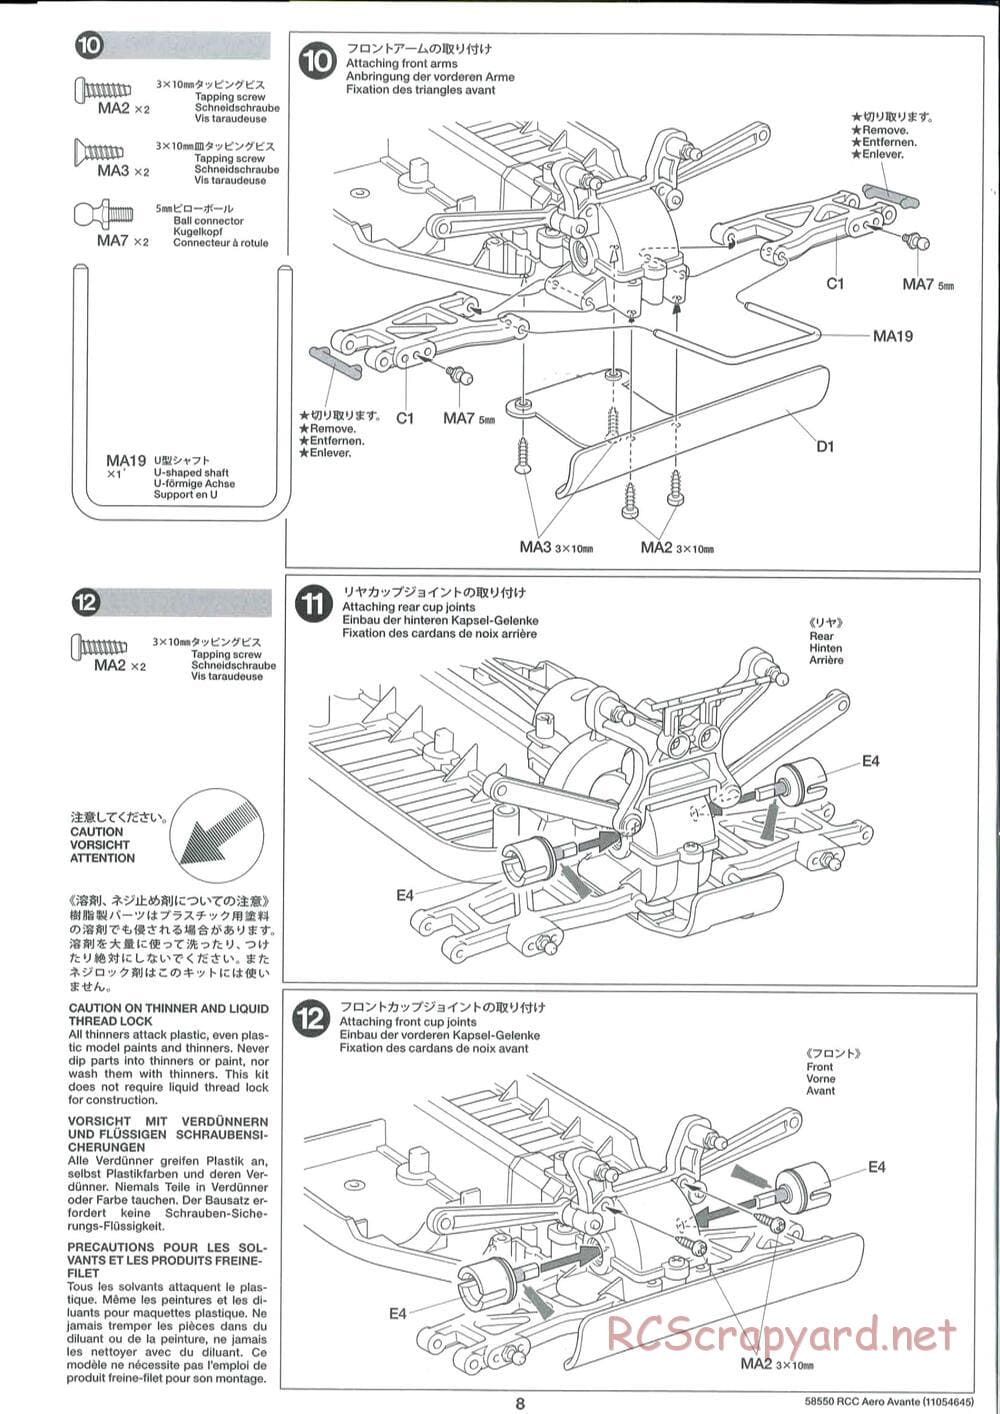 Tamiya - Aero Avante Chassis - Manual - Page 8